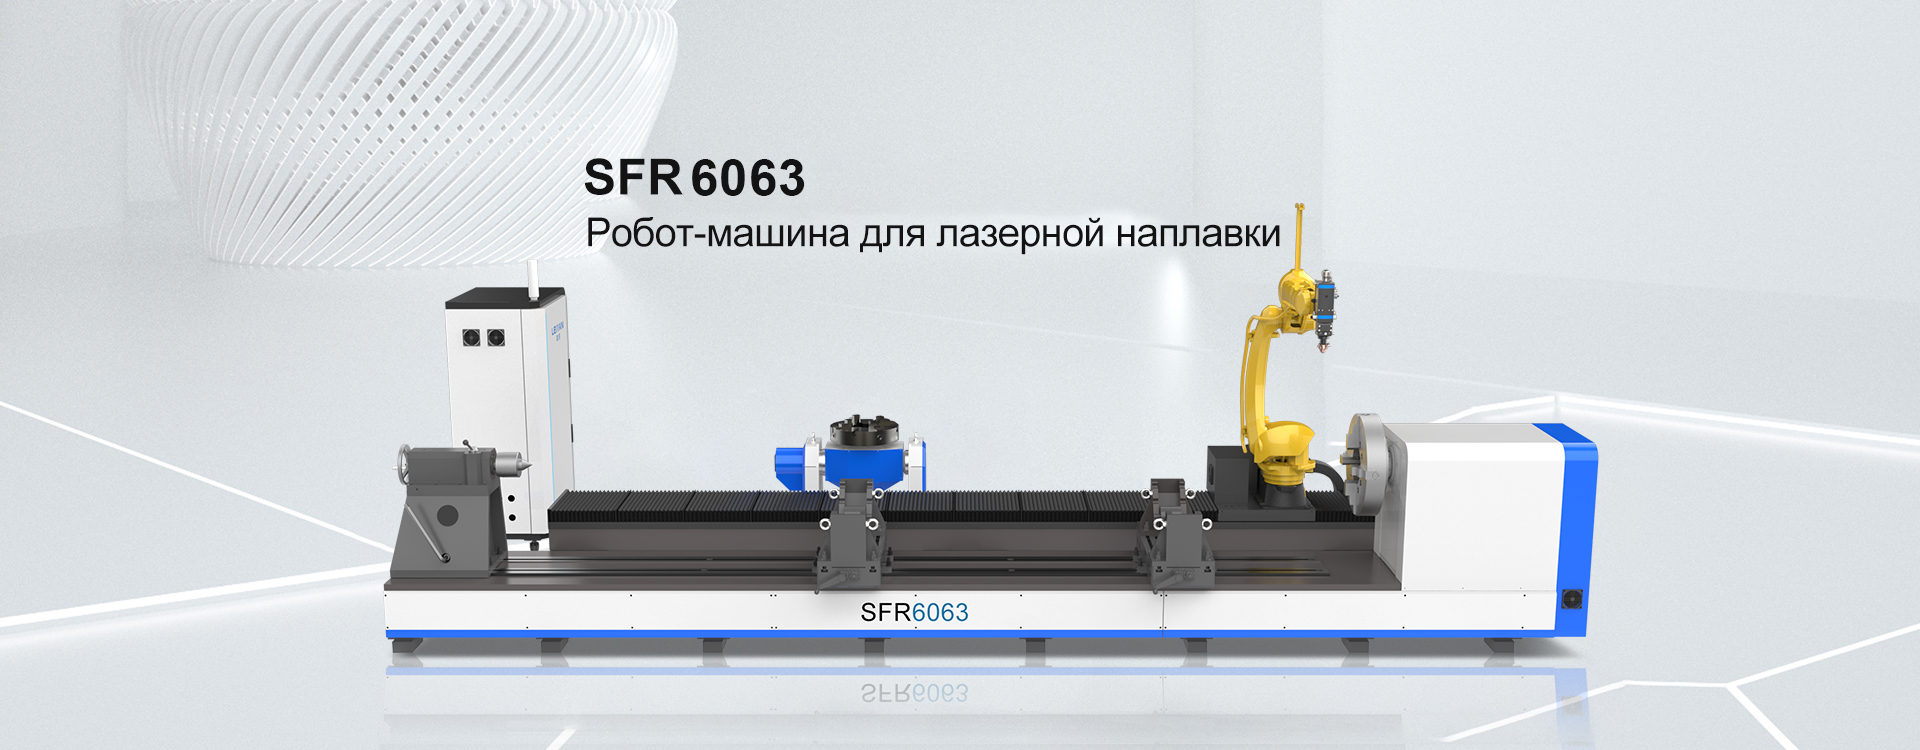 Робот-машина для лазерной наплавки SFR5050